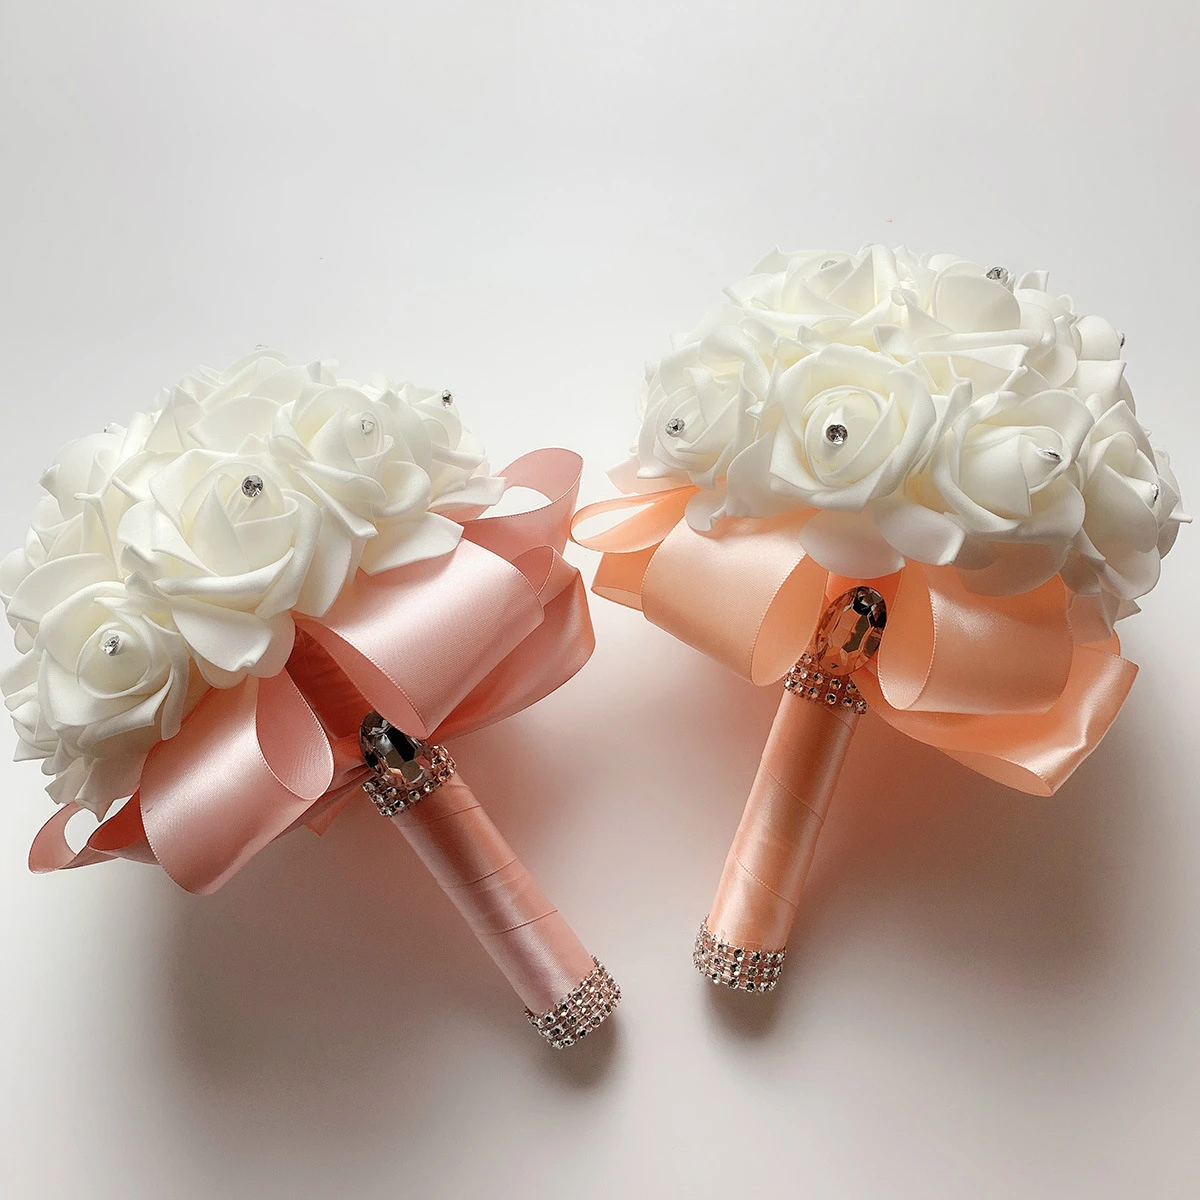 Красивый белый свадебный цветок цвета слоновой кости Свадебный букет Искусственный цветок «Роза» букет хрустальные свадебные букеты